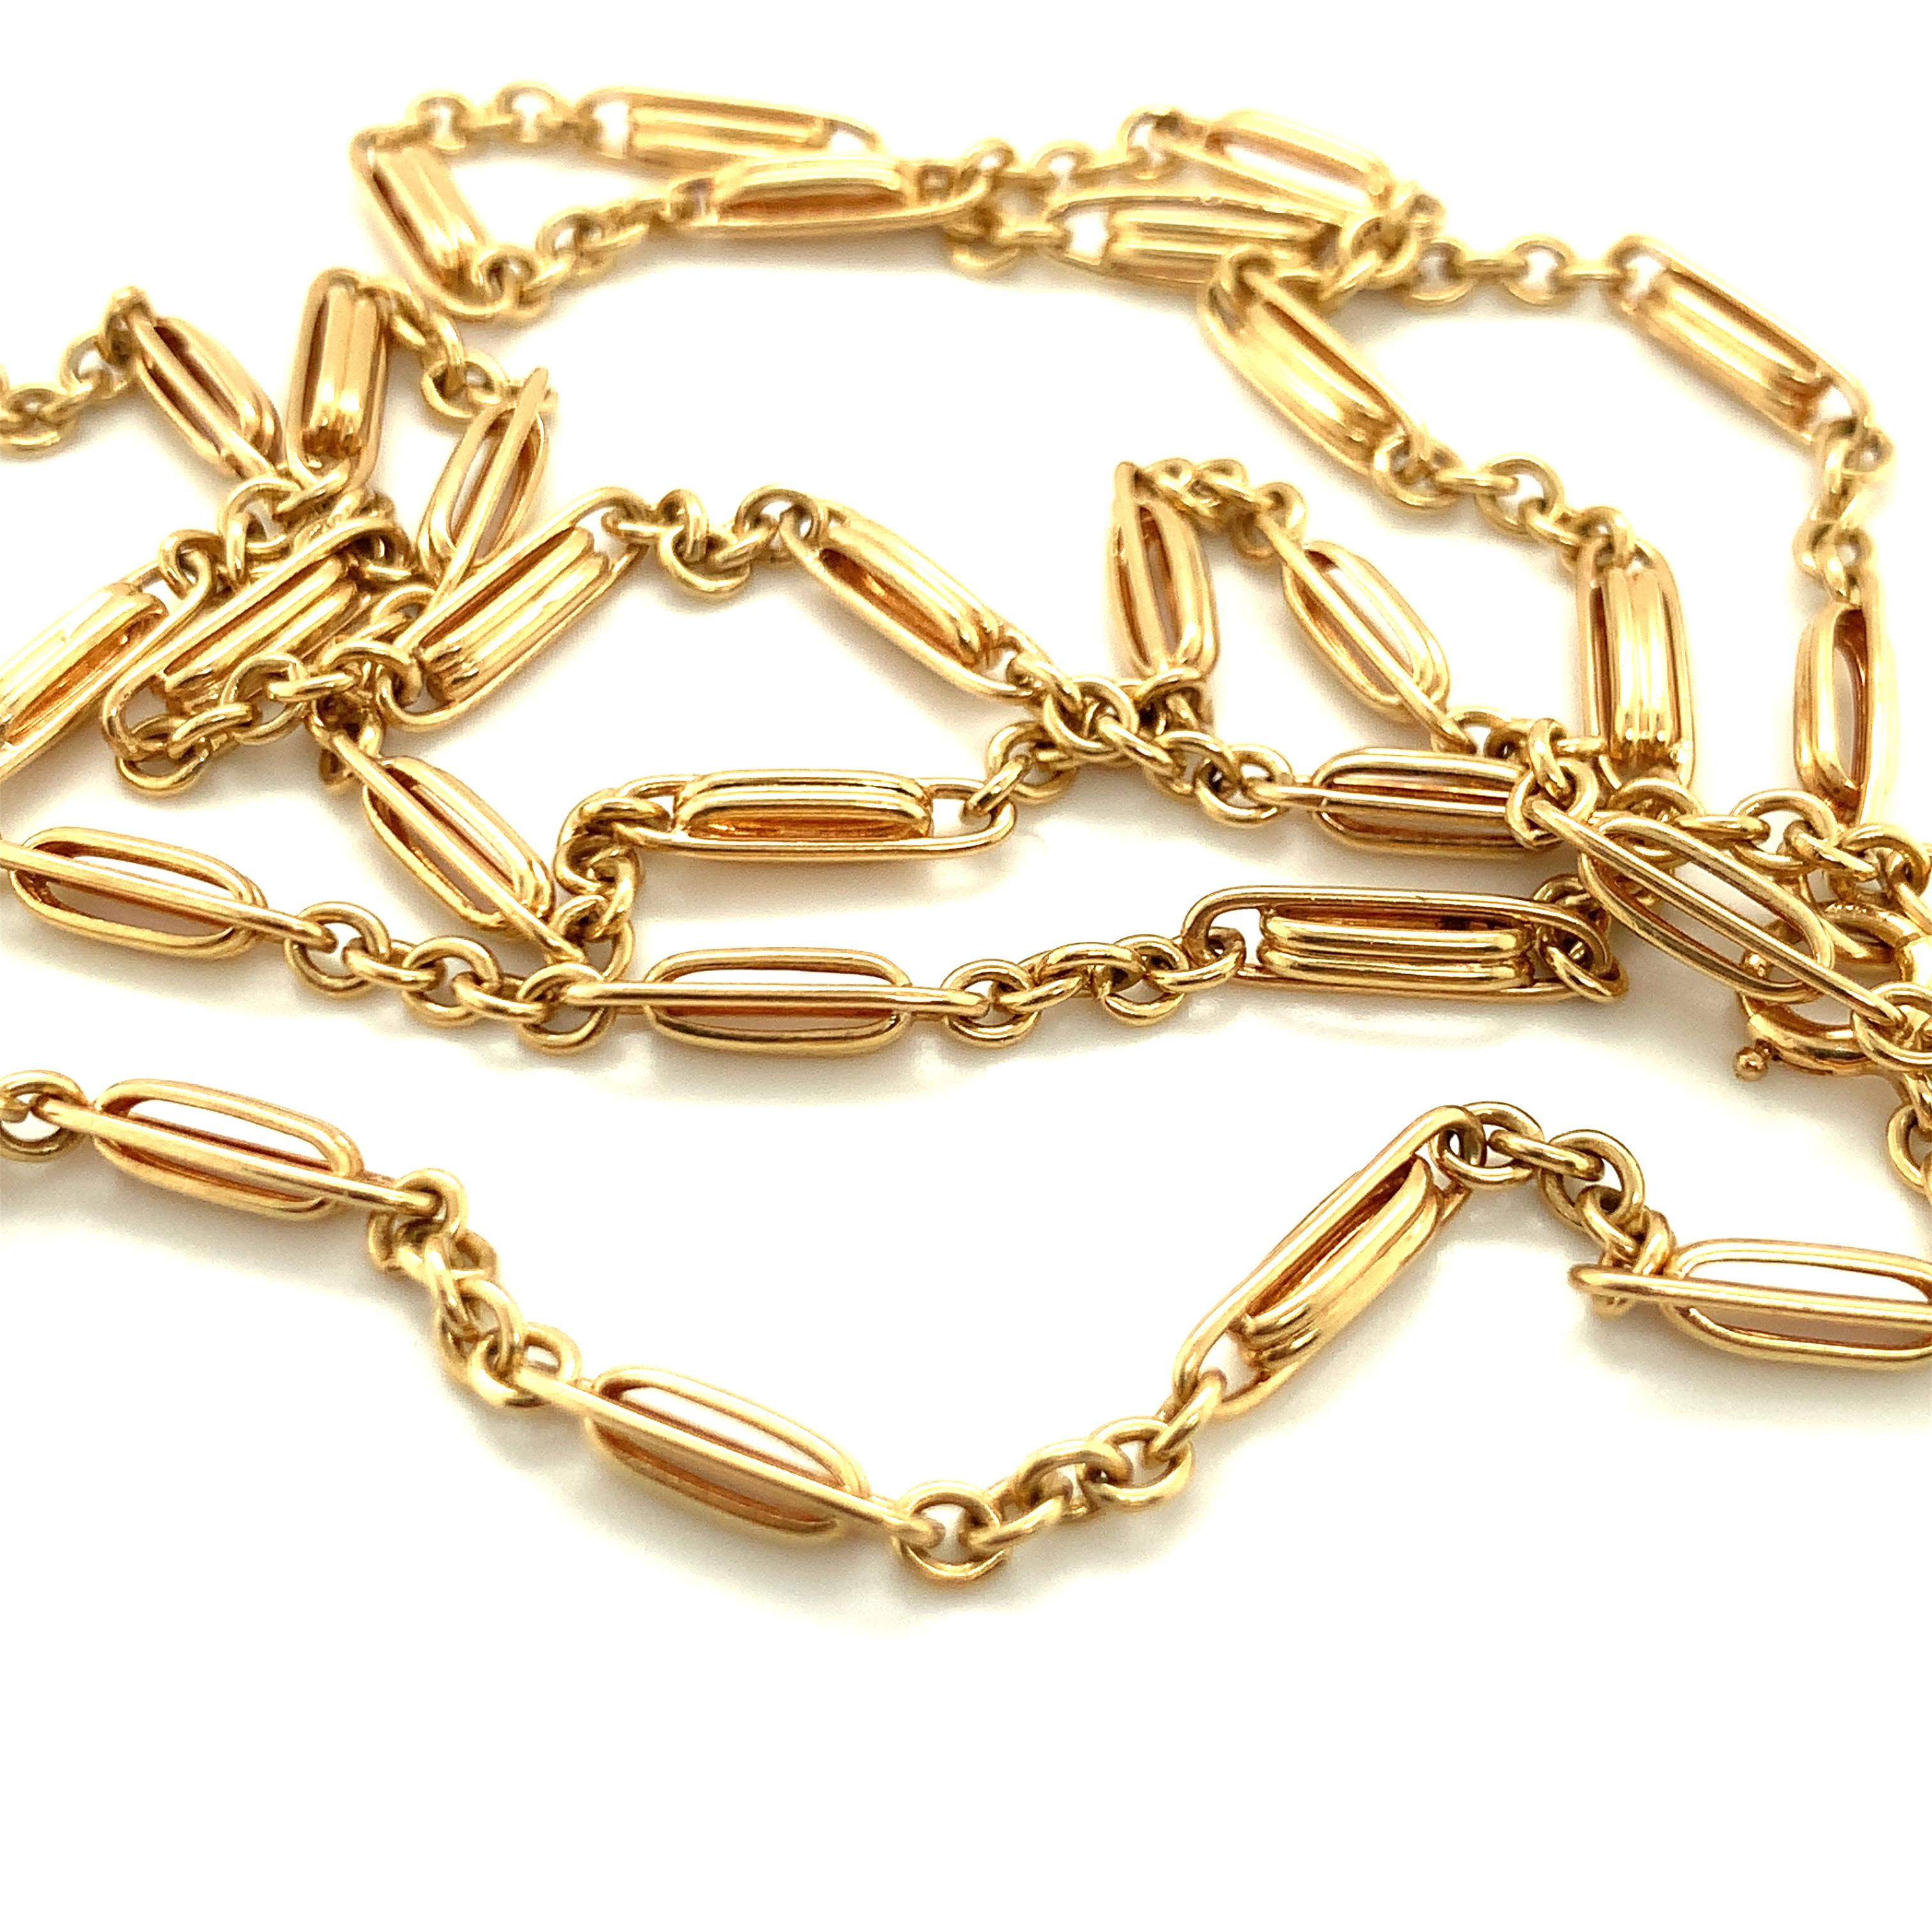 Ein 14K Gelbgold viktorianischen Phantasie Link antike Kette Halskette Messung 30 Zoll lang und mit einem Gewicht von 19 Gramm.  Misst 3 mm. breit.

Exquisit, kompliziert, unverwechselbar.

Metall: 14K Gelbgold
CIRCA: 1900,